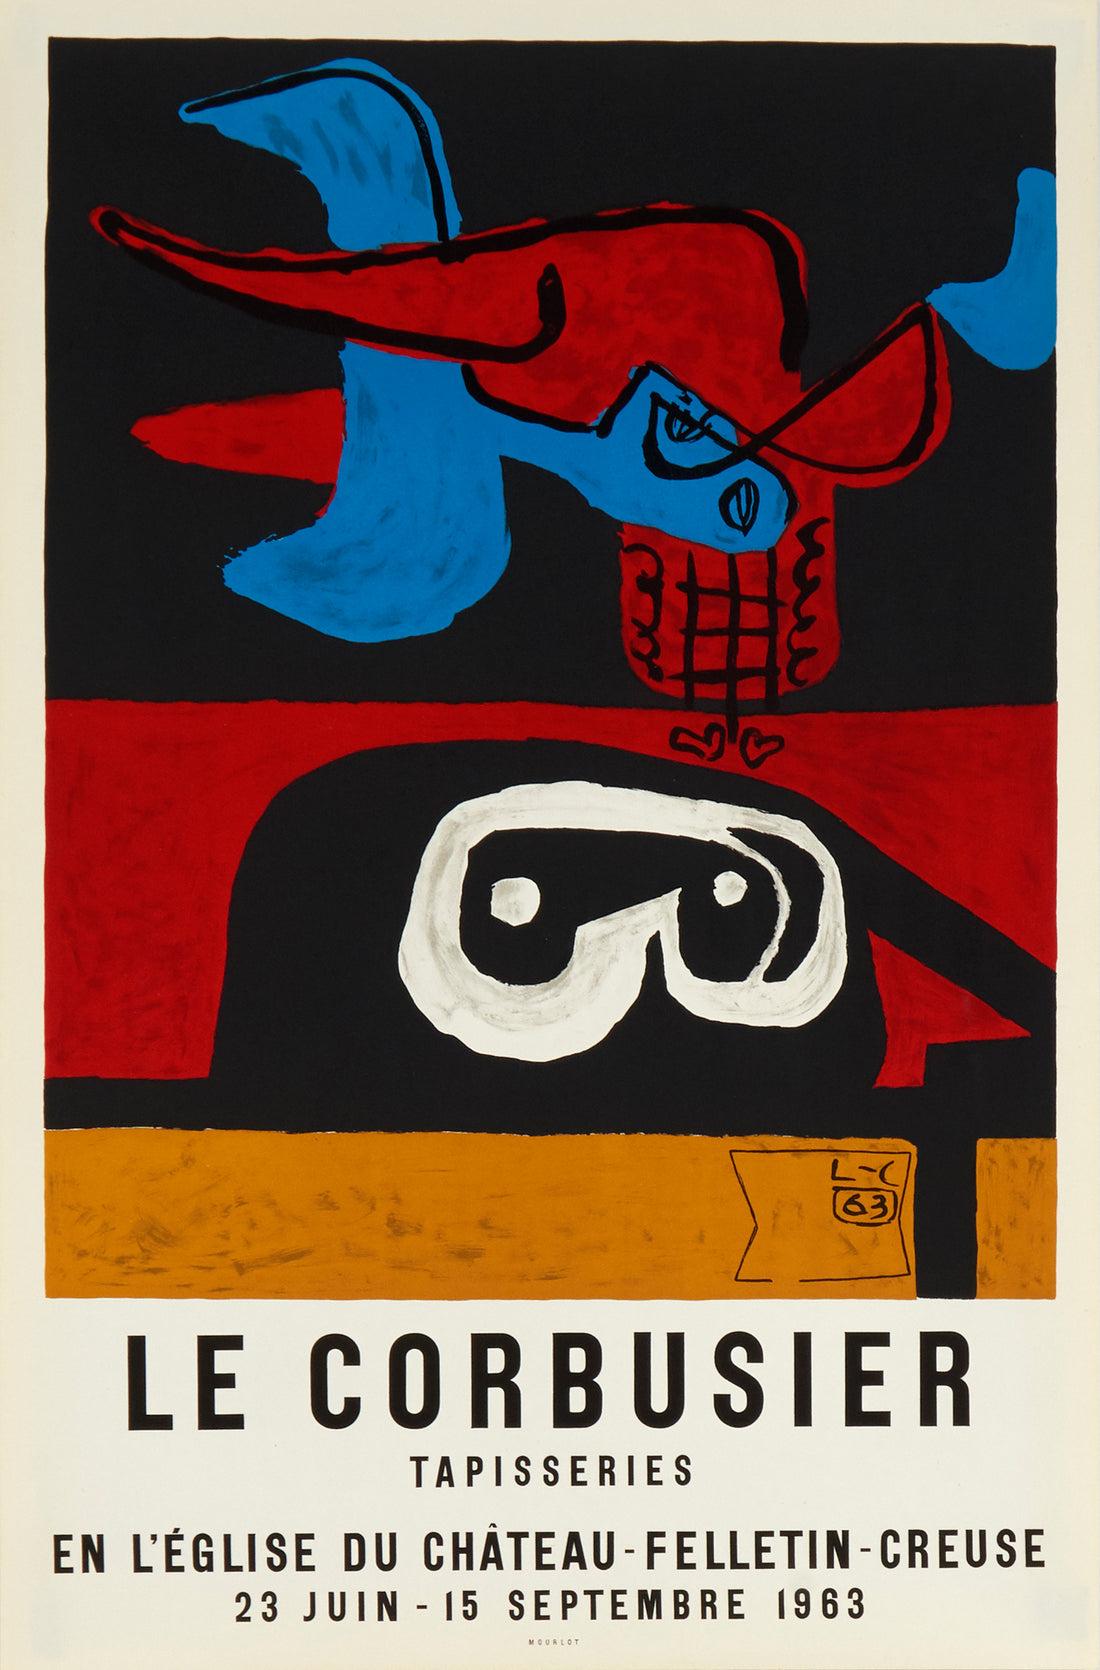 Künstler: Le Corbusier

Medium: Lithografisches Plakat, 1963

Abmessungen: 29,5 x 19,25 Zoll, 74,9 x 48,9 cm

Klassisches Posterpapier - Perfekter Zustand A+

Dieses reiche und schöne lithografische Plakat wurde für eine Ausstellung der Tapisserien